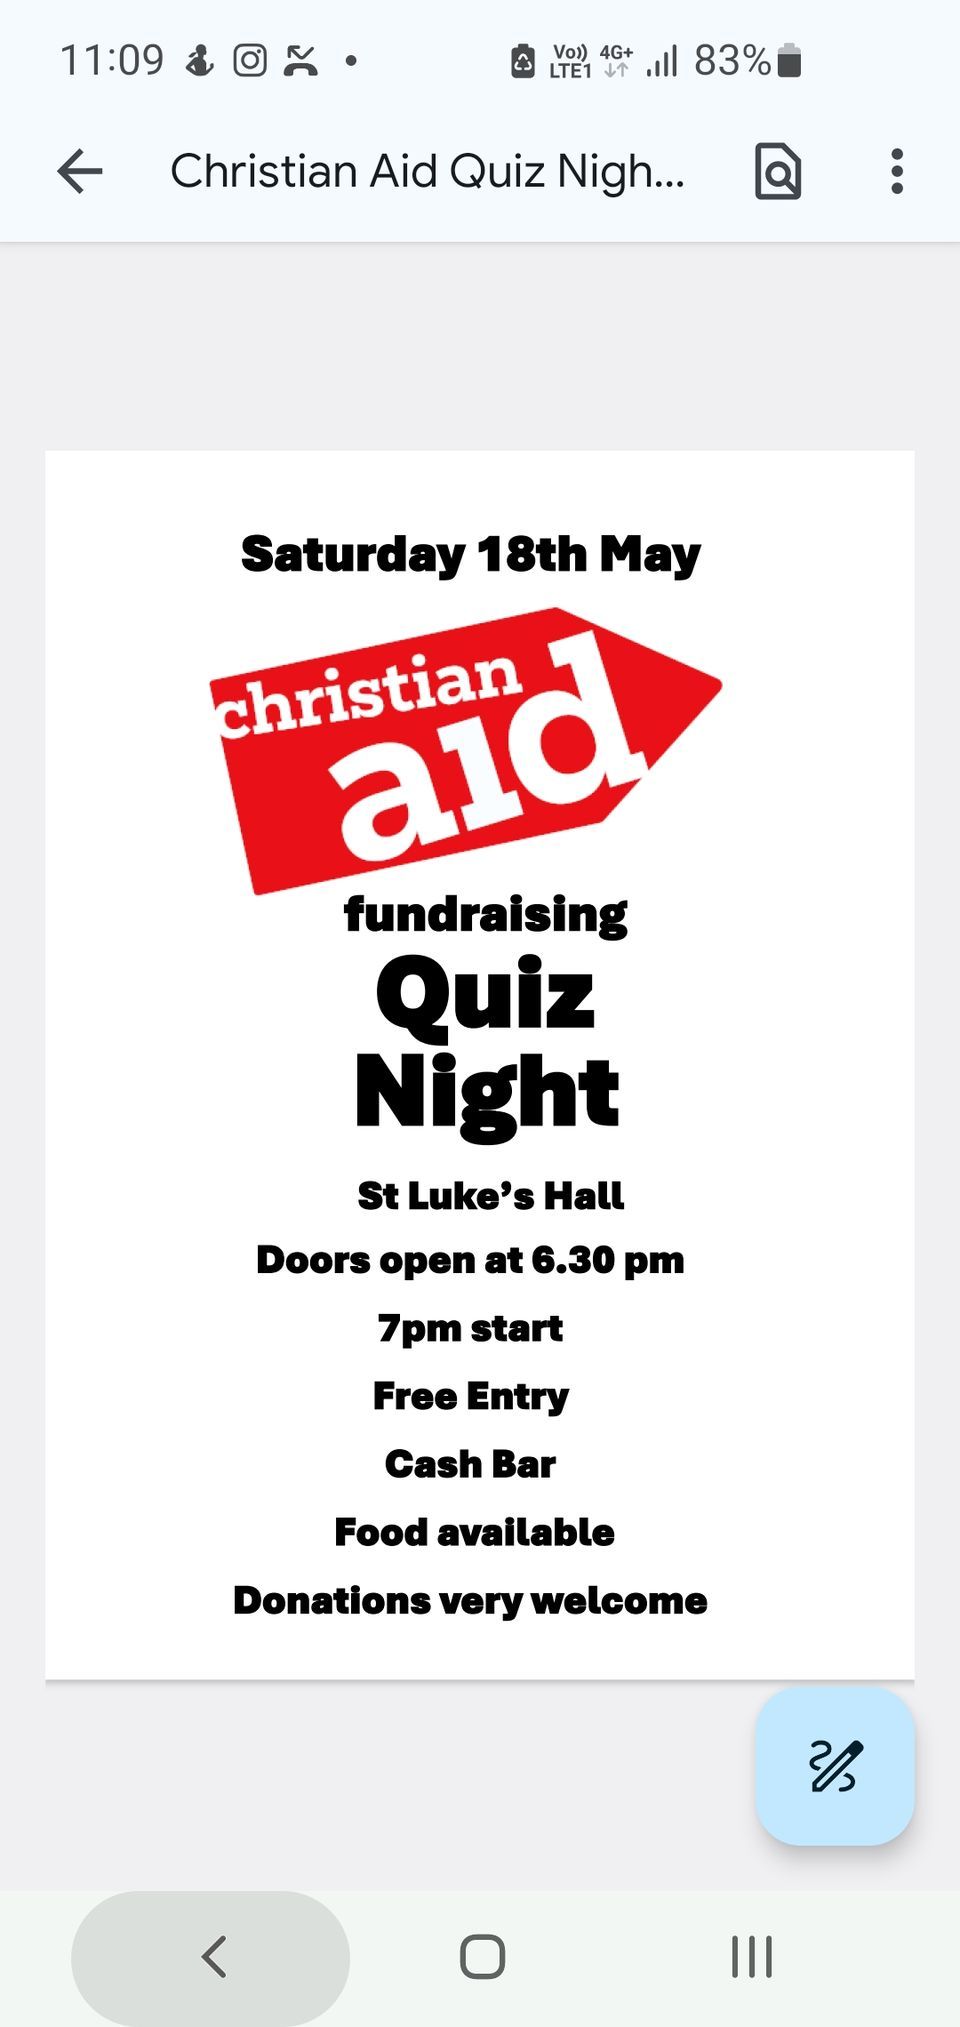 Christian Aid fundraising Quiz Night